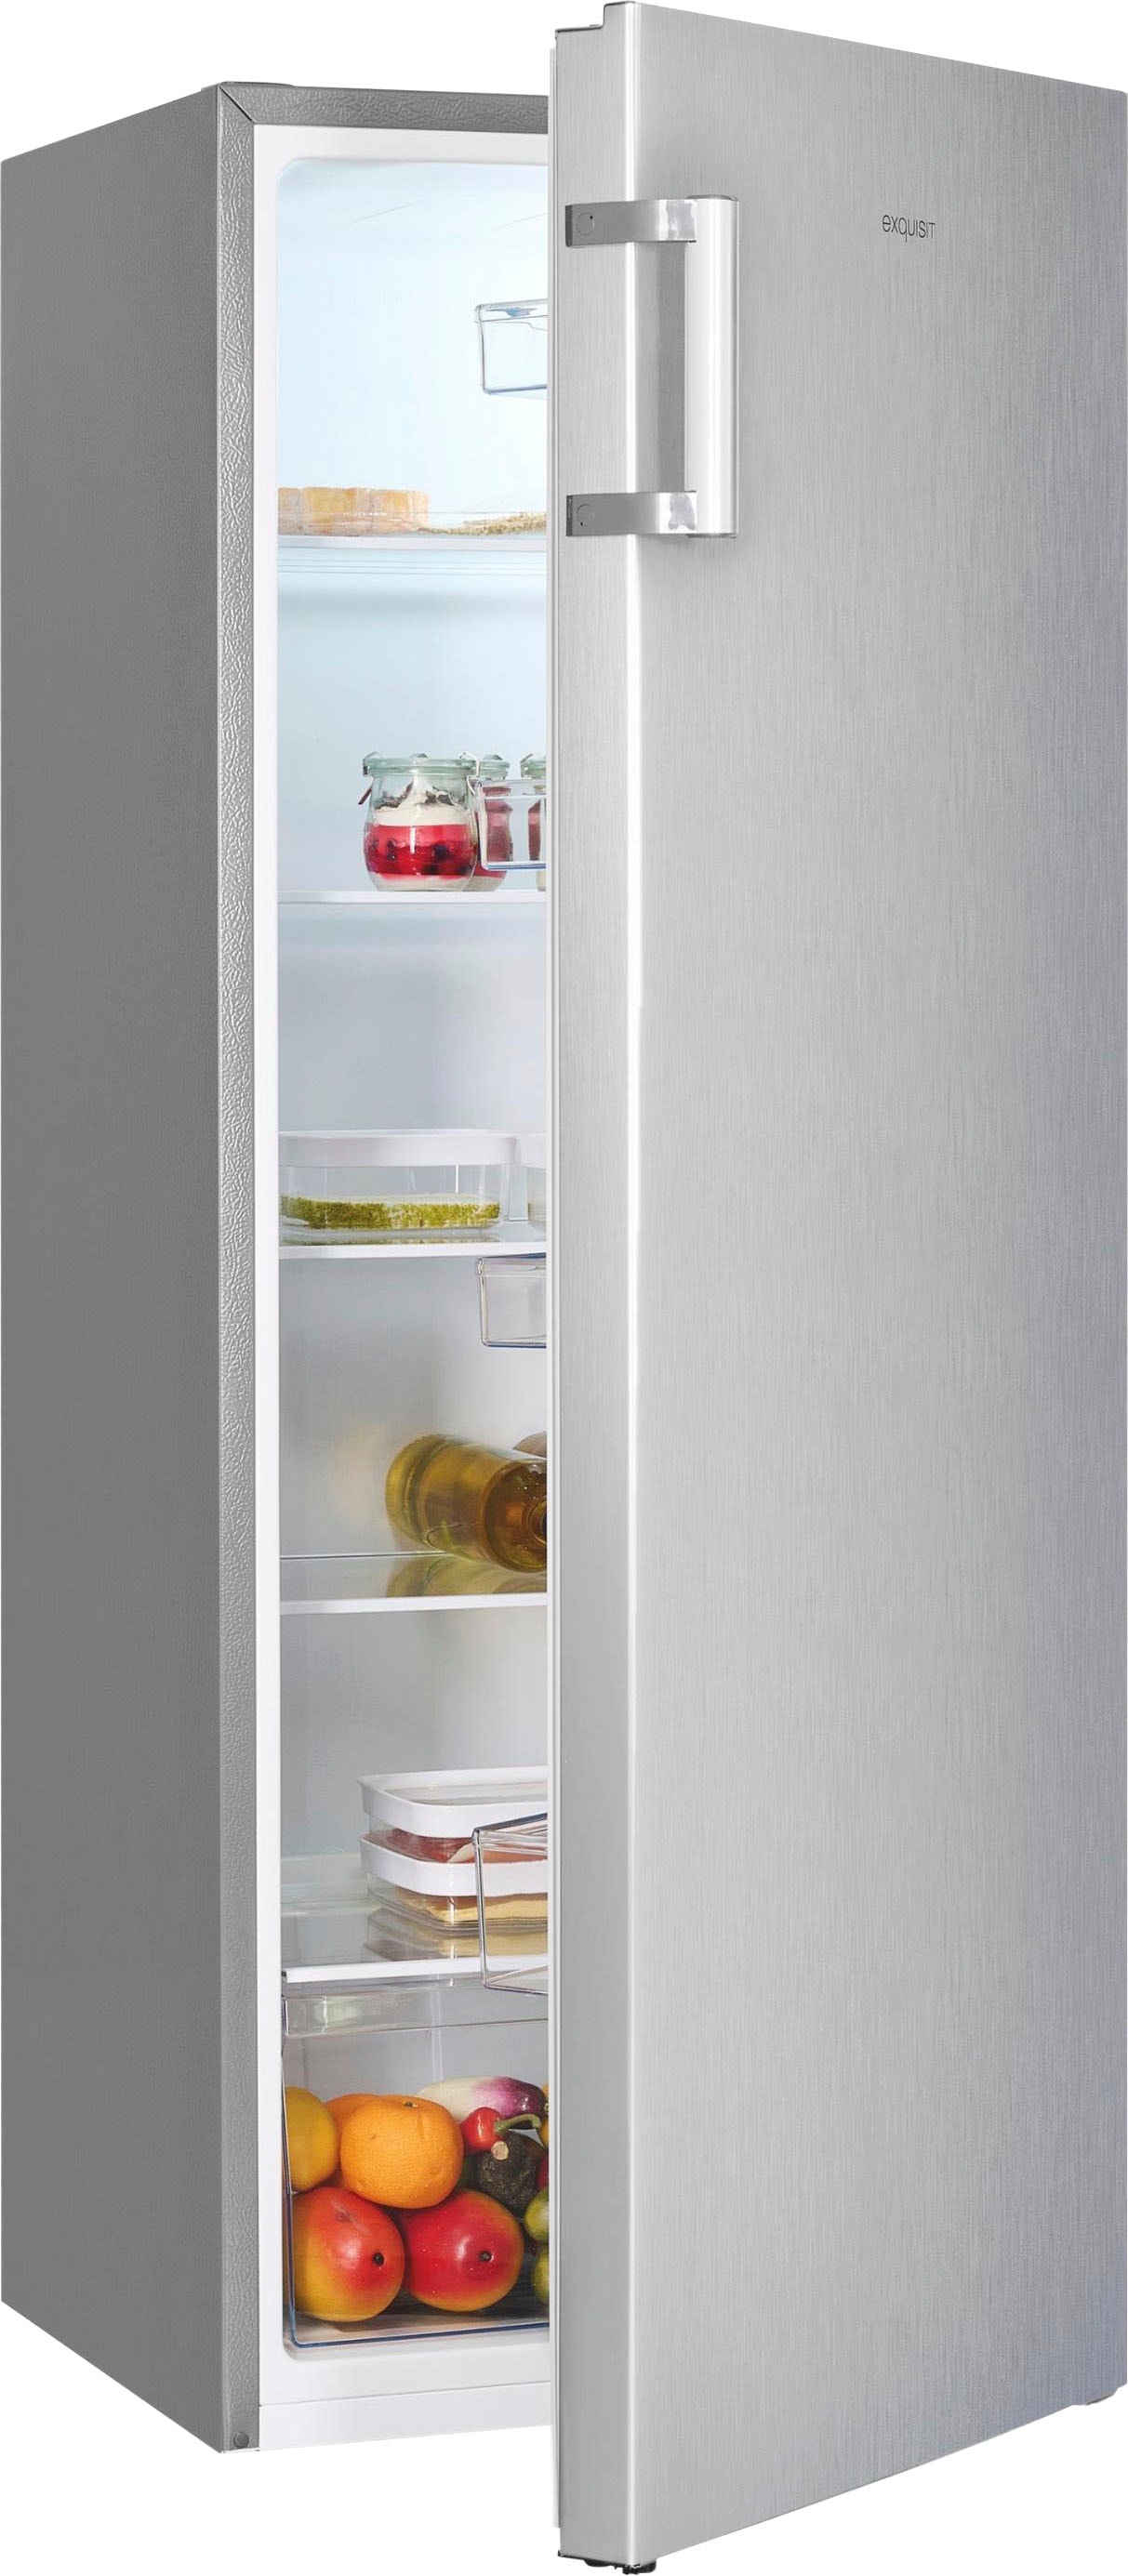 exquisit Vollraumkühlschrank »KS320-V-H-010E«, KS320-V-H-010E, 143,4 cm hoch,  55 cm breit, 242 L Volumen jetzt online bei OTTO | Kühlschränke